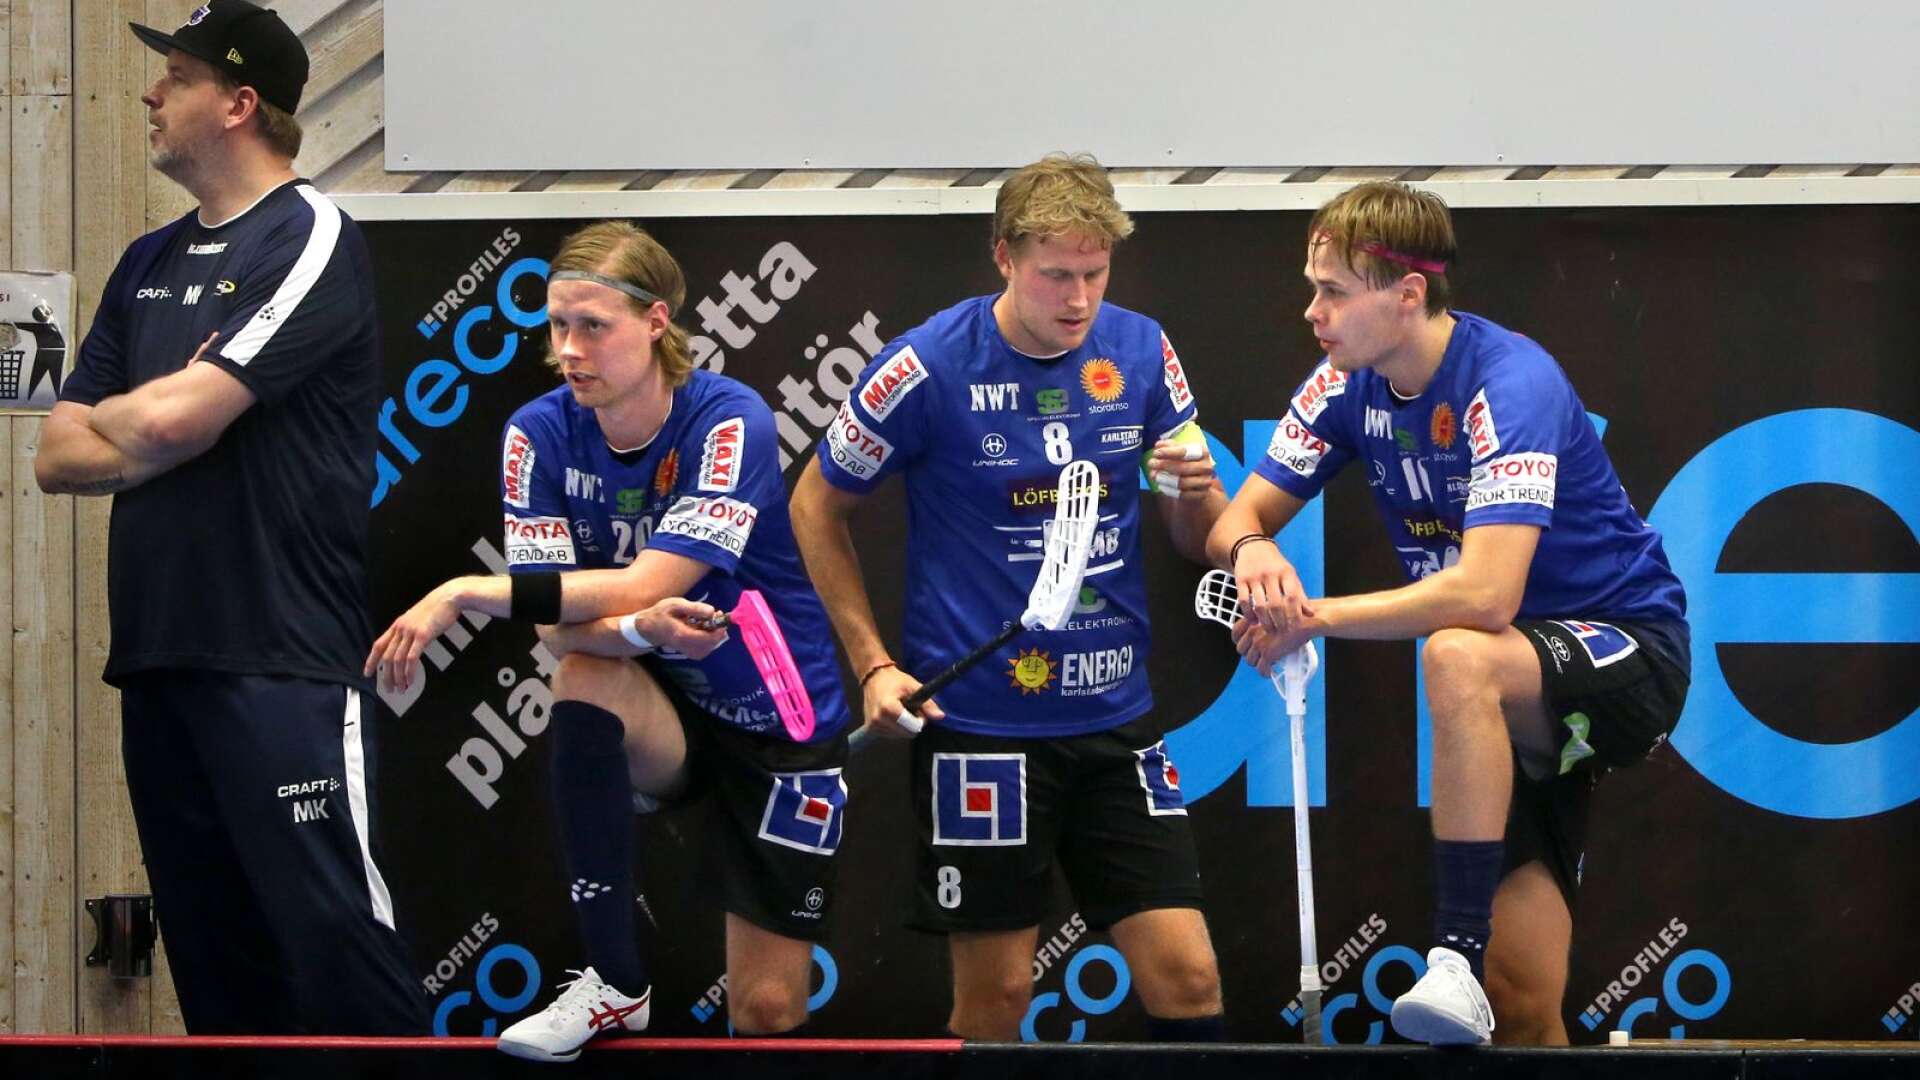 Karlstad IBF, med nye huvudtränaren Mattias Karlsson, vann träningsmatchen mot Hagfors med 8-5. De tre Colling-bröderna Adam, Tom och Jesper spelade andra matchen i samma kedja. 